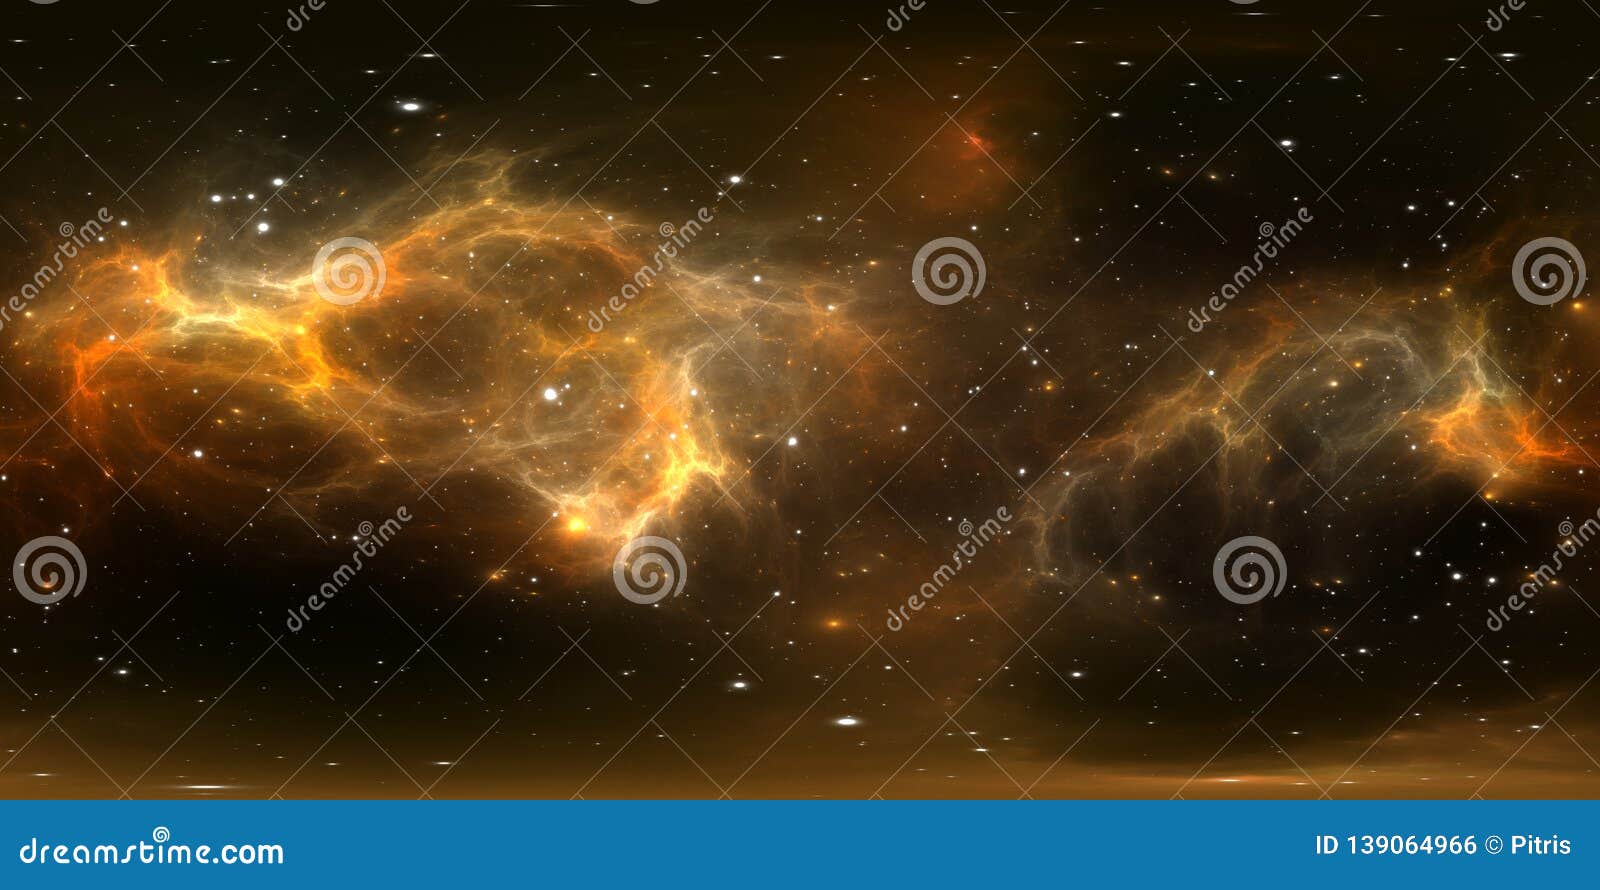 360 Degree Space Nebula Panorama, Equirectangular